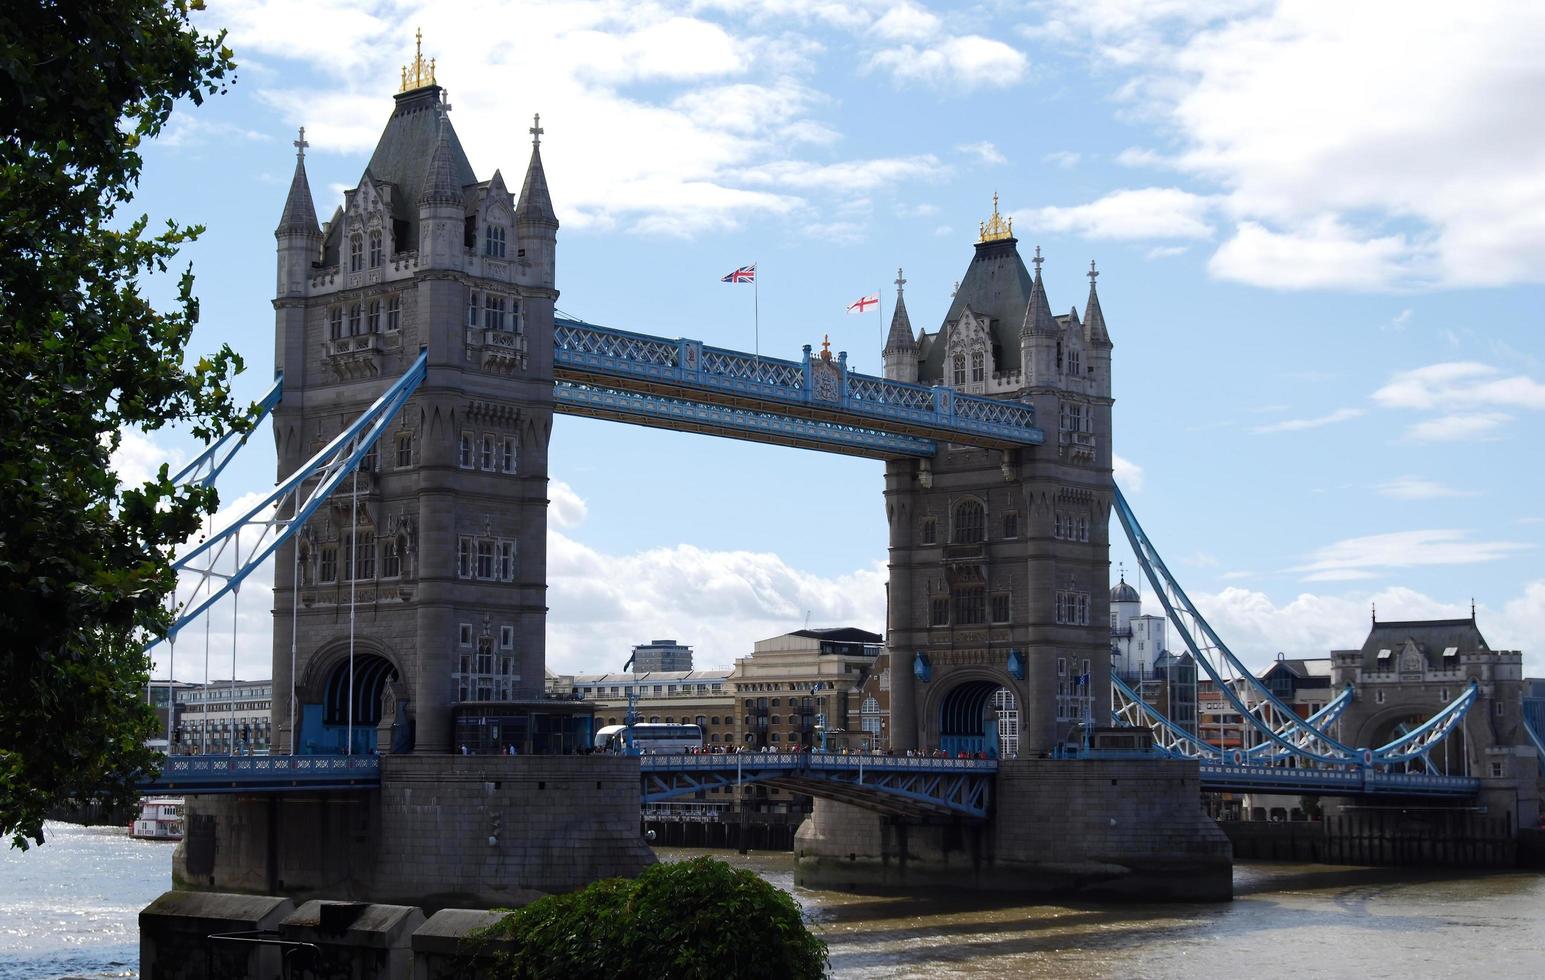 vue sur le Tower Bridge sur la Tamise à Londres. angleterre, royaume-uni photo